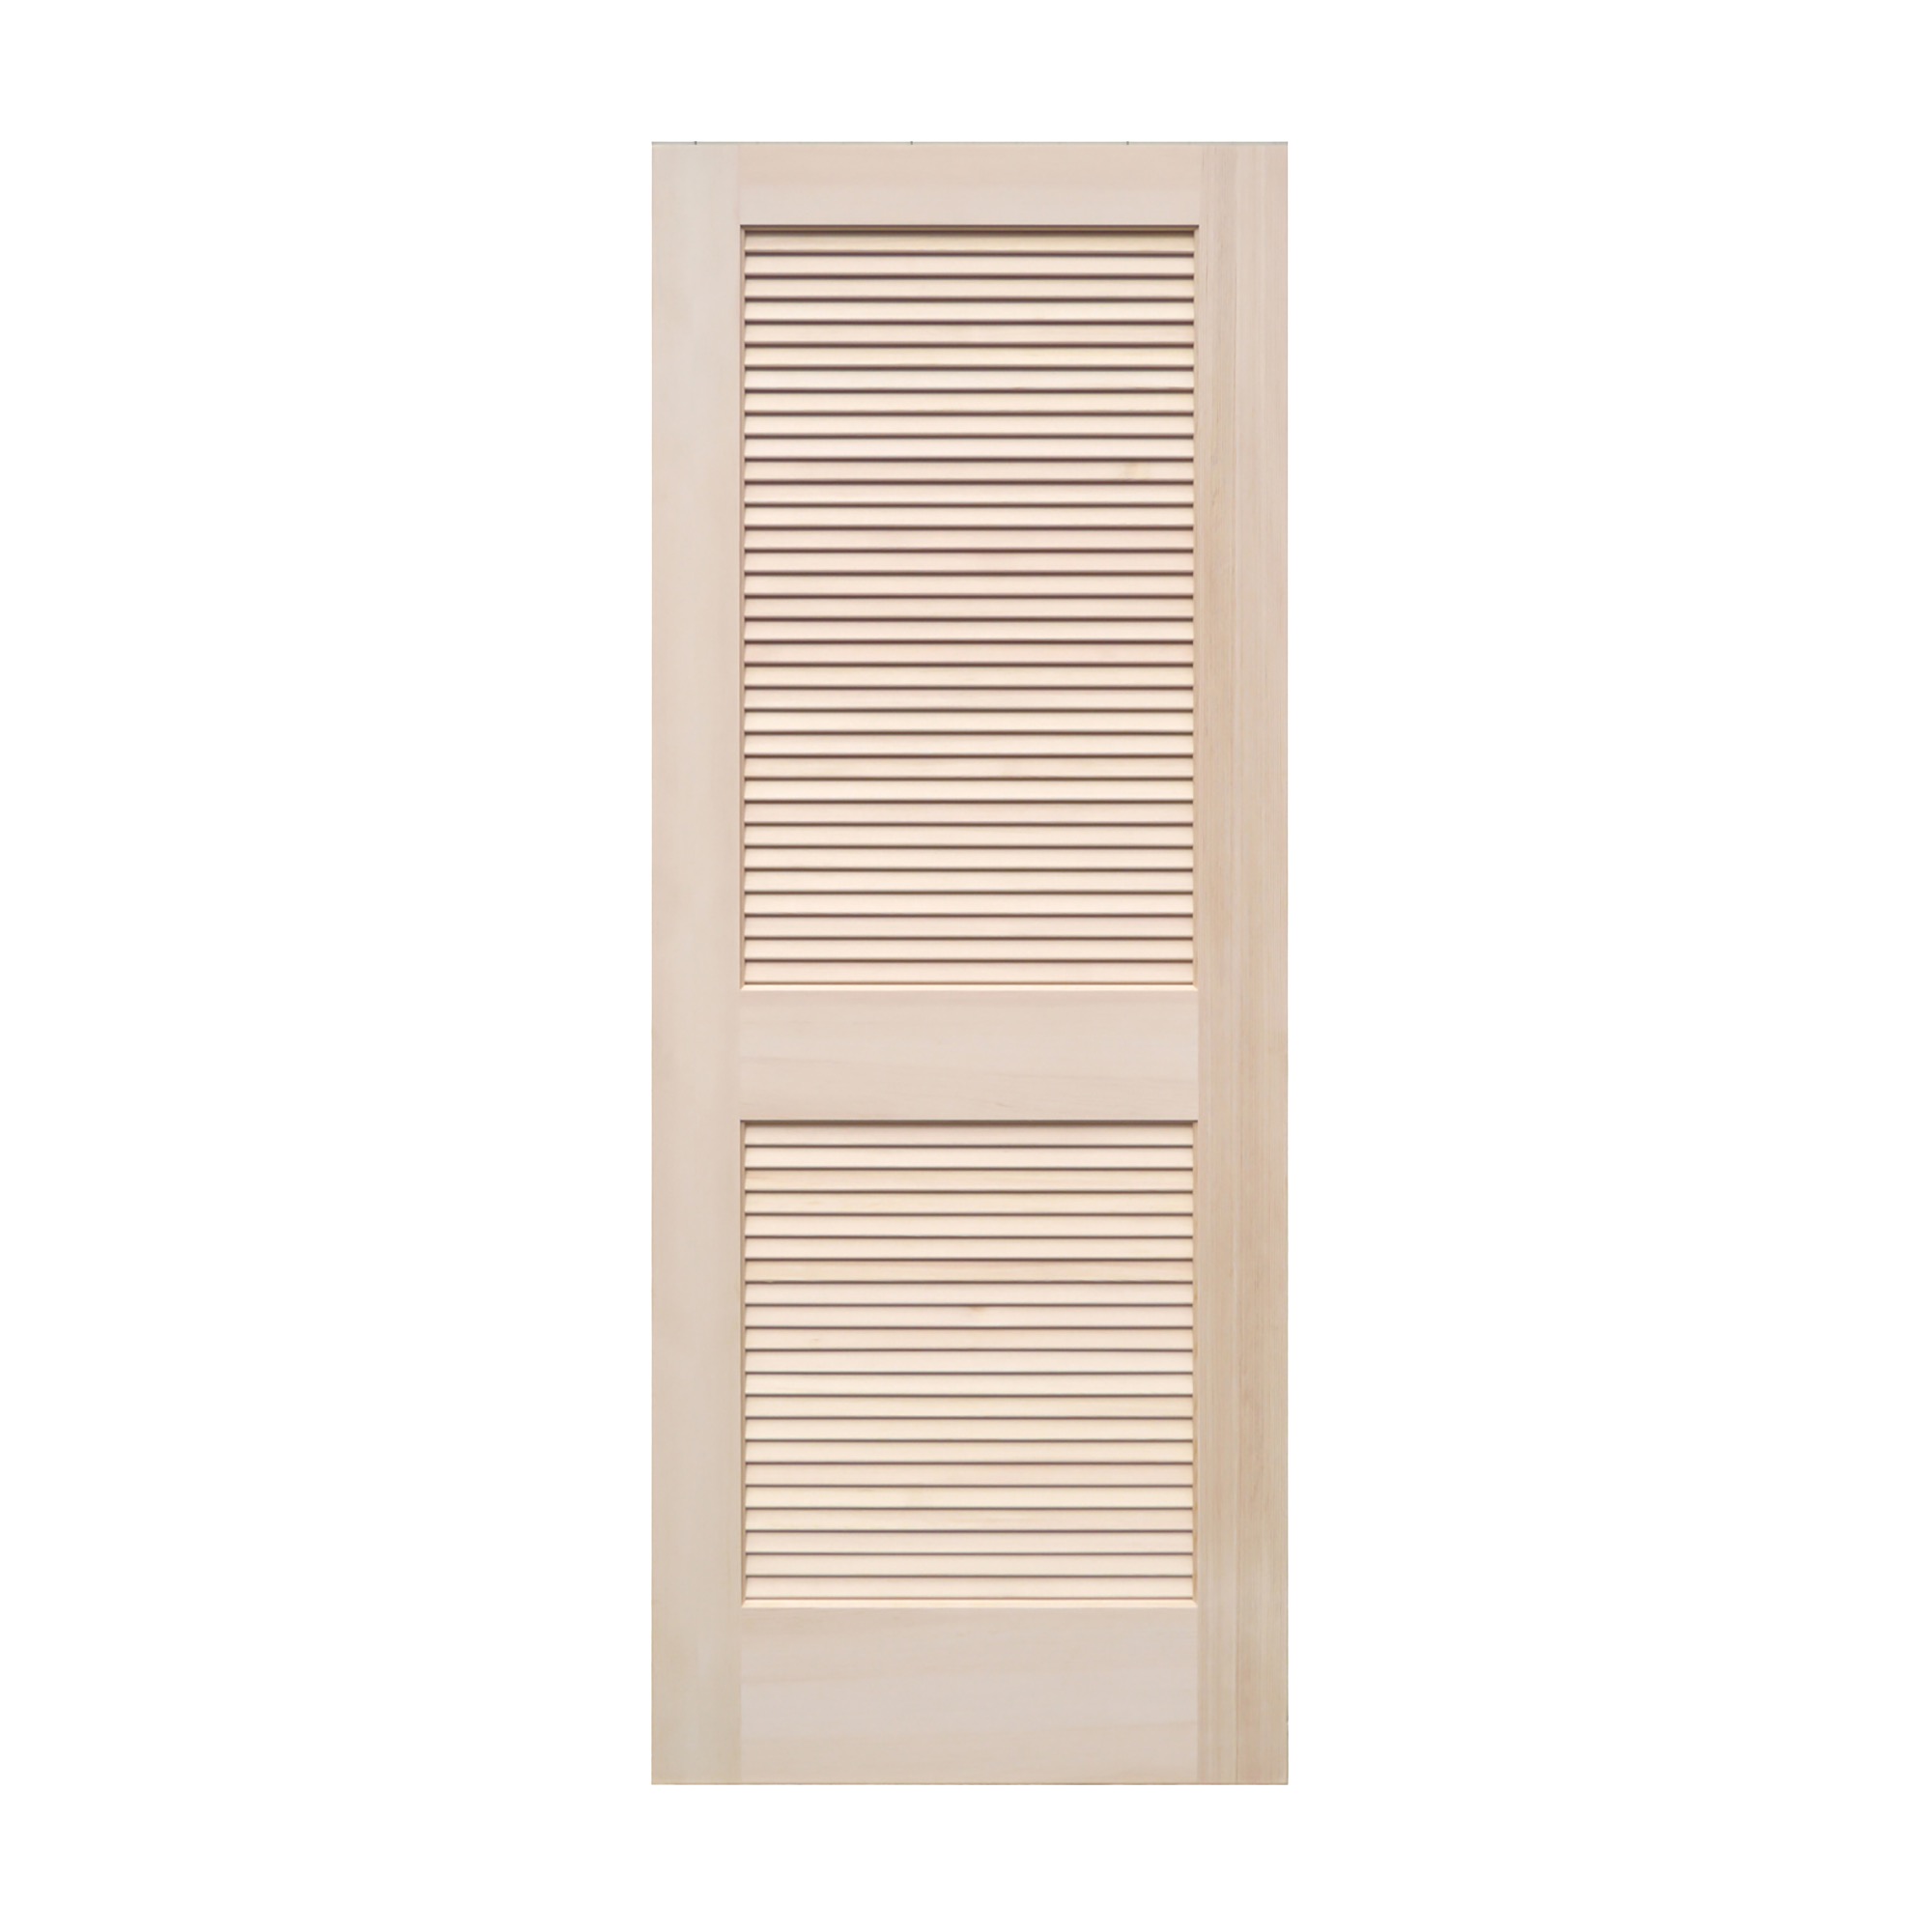 木製パインドア ルーバードア W735 | DW-DR004-05-G173 | ドア・扉